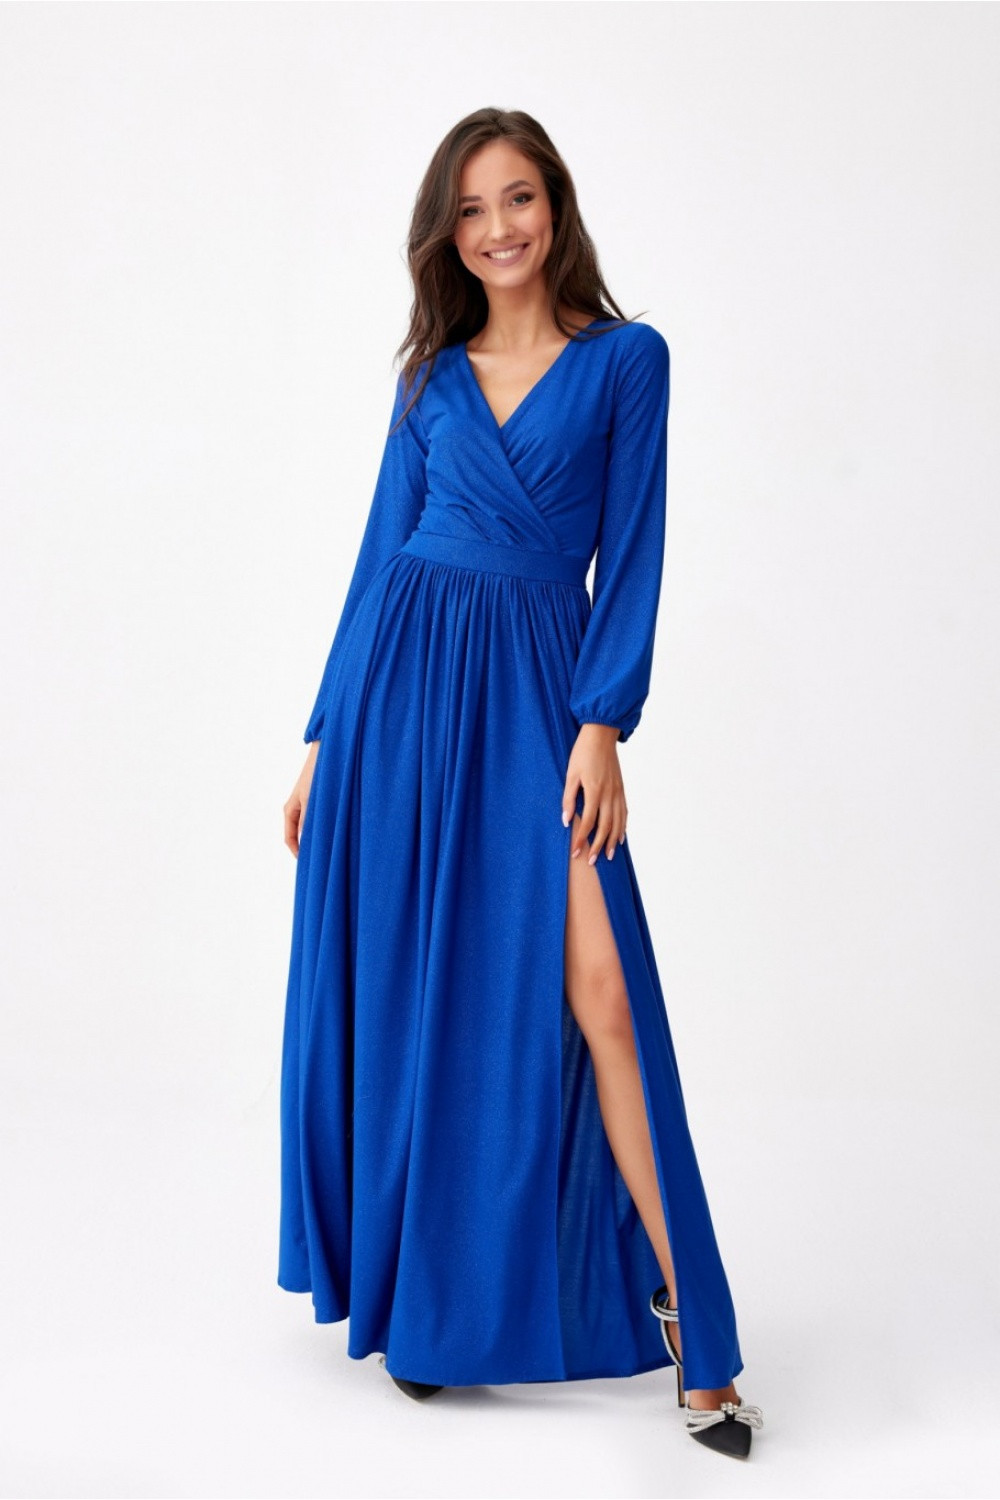 Dlouhé dámské šaty SUK0420 královská modř - Roco Fashion 38